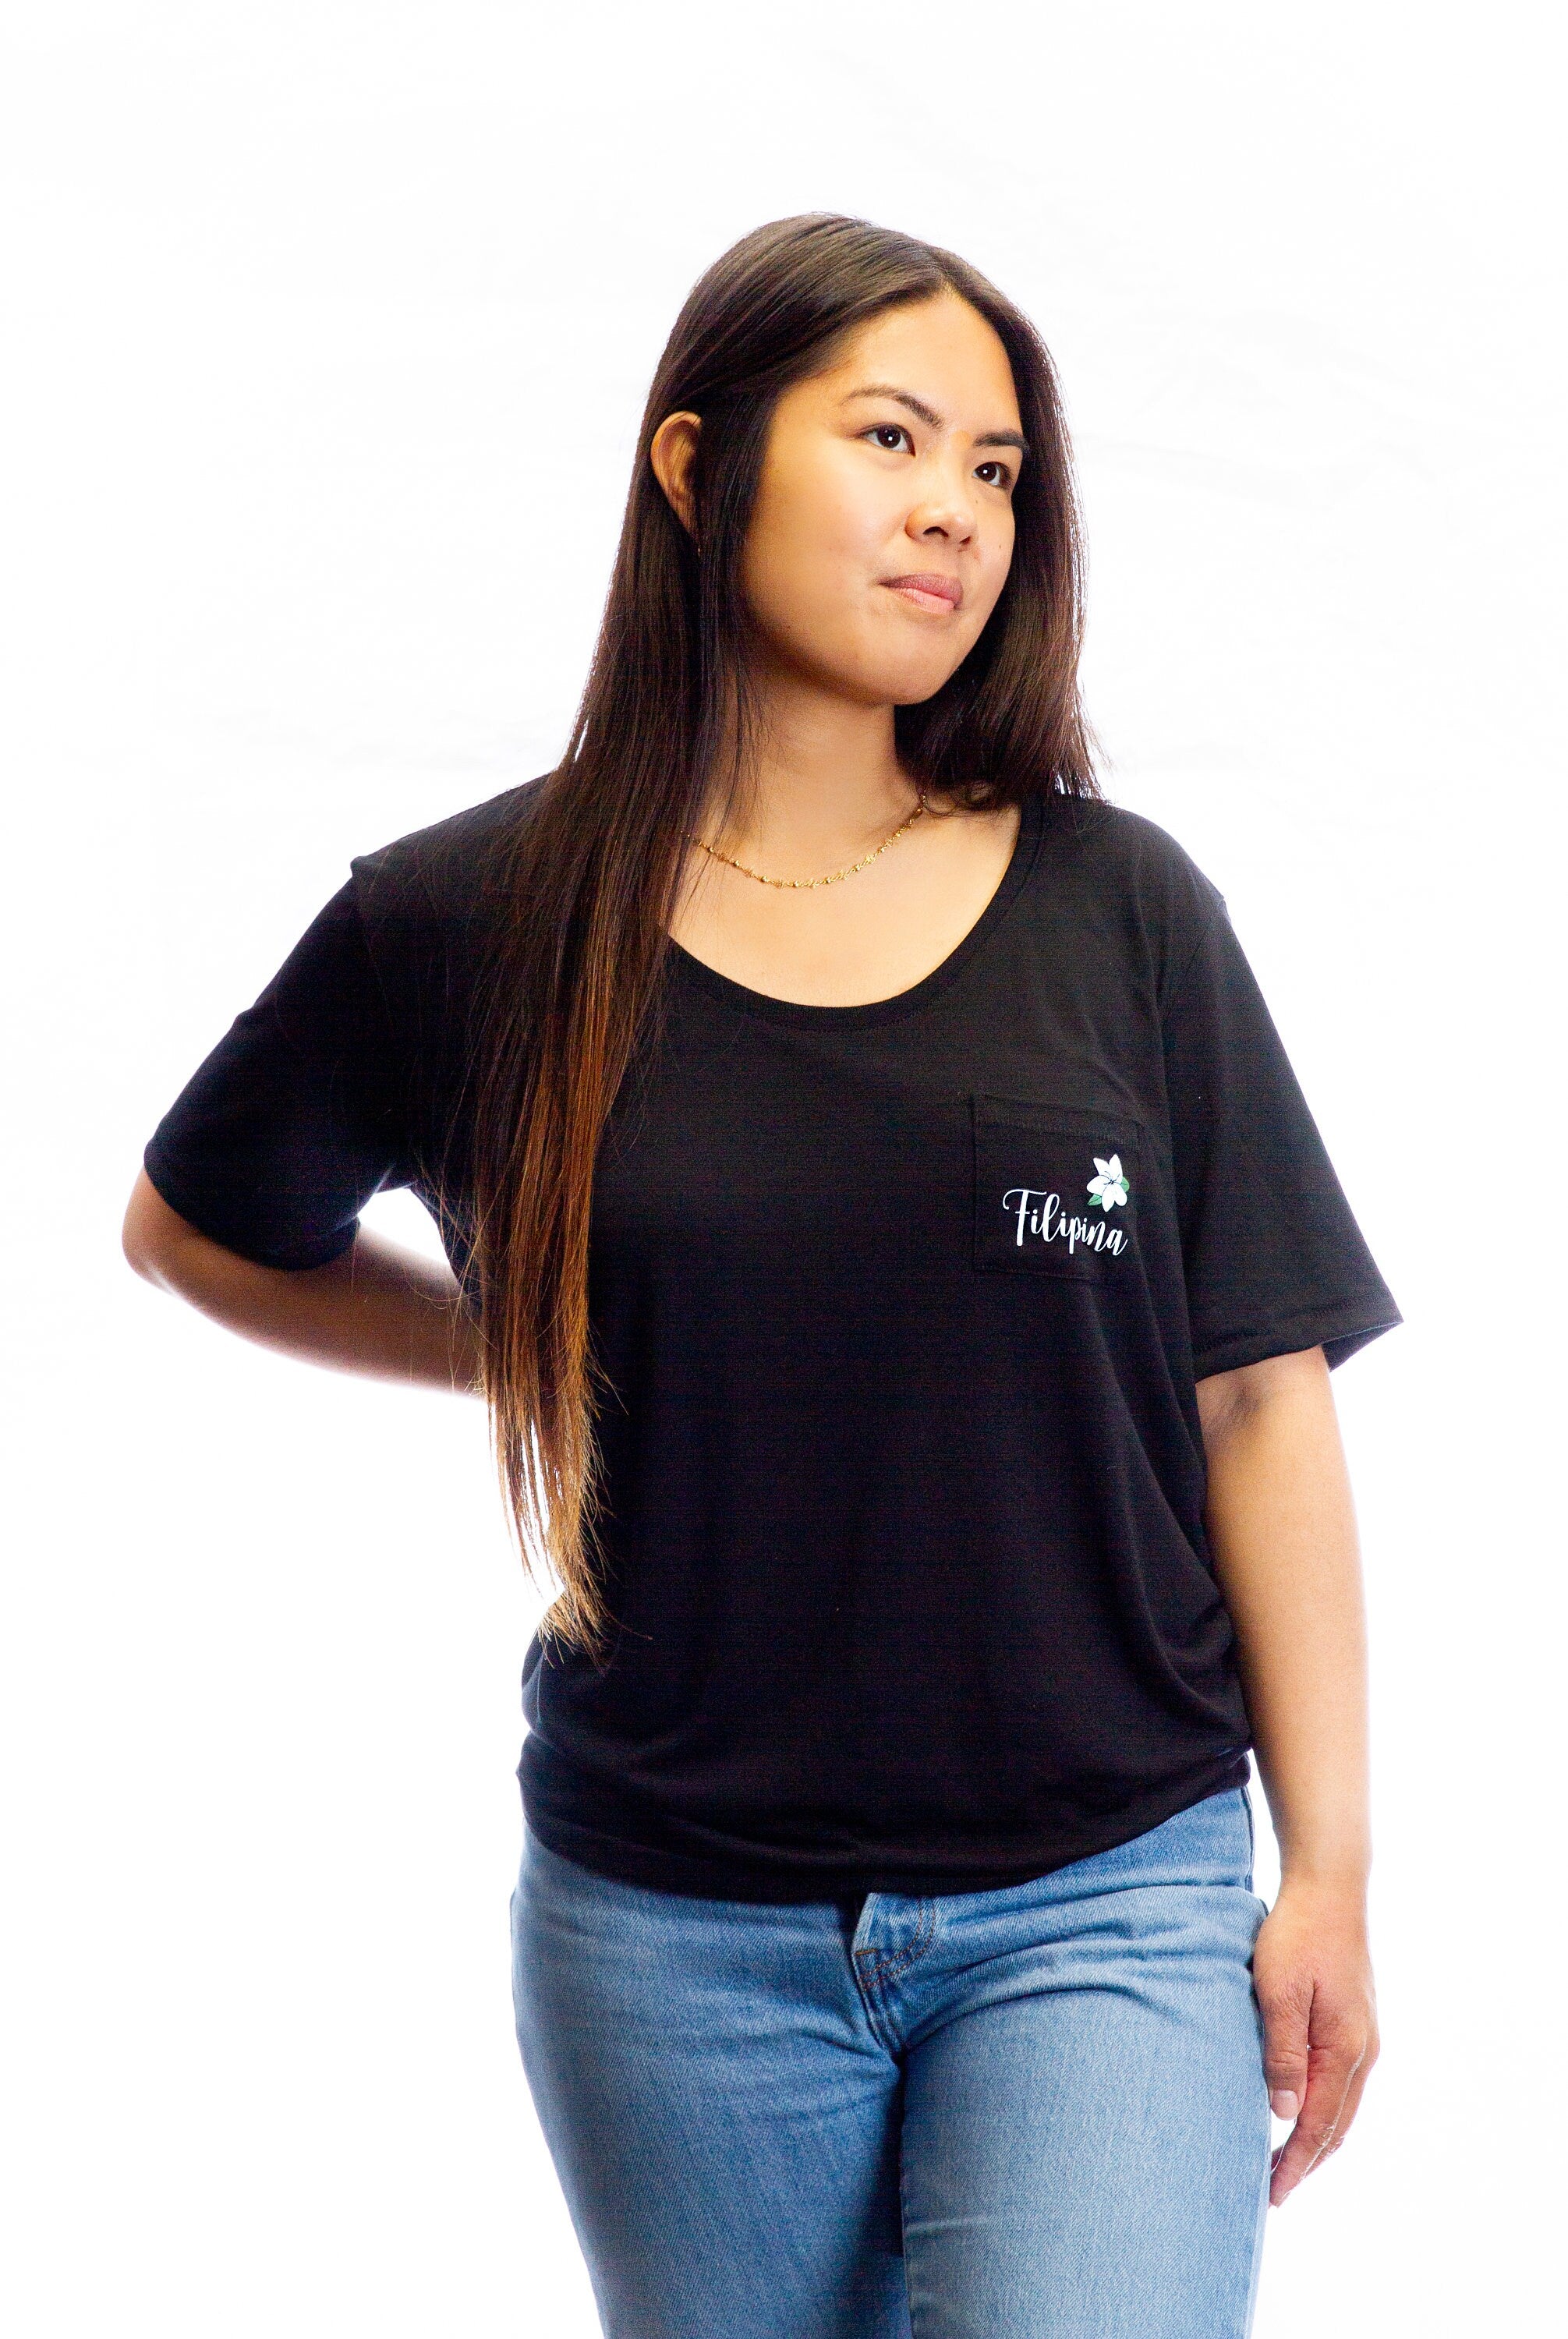 Filipina (with Sampaguita) Black Pocket Tee, Filipina T-Shirt, Pinay T-Shirt, Black Pocket T-shirt, Filipina Apparels, Filipino Apparels